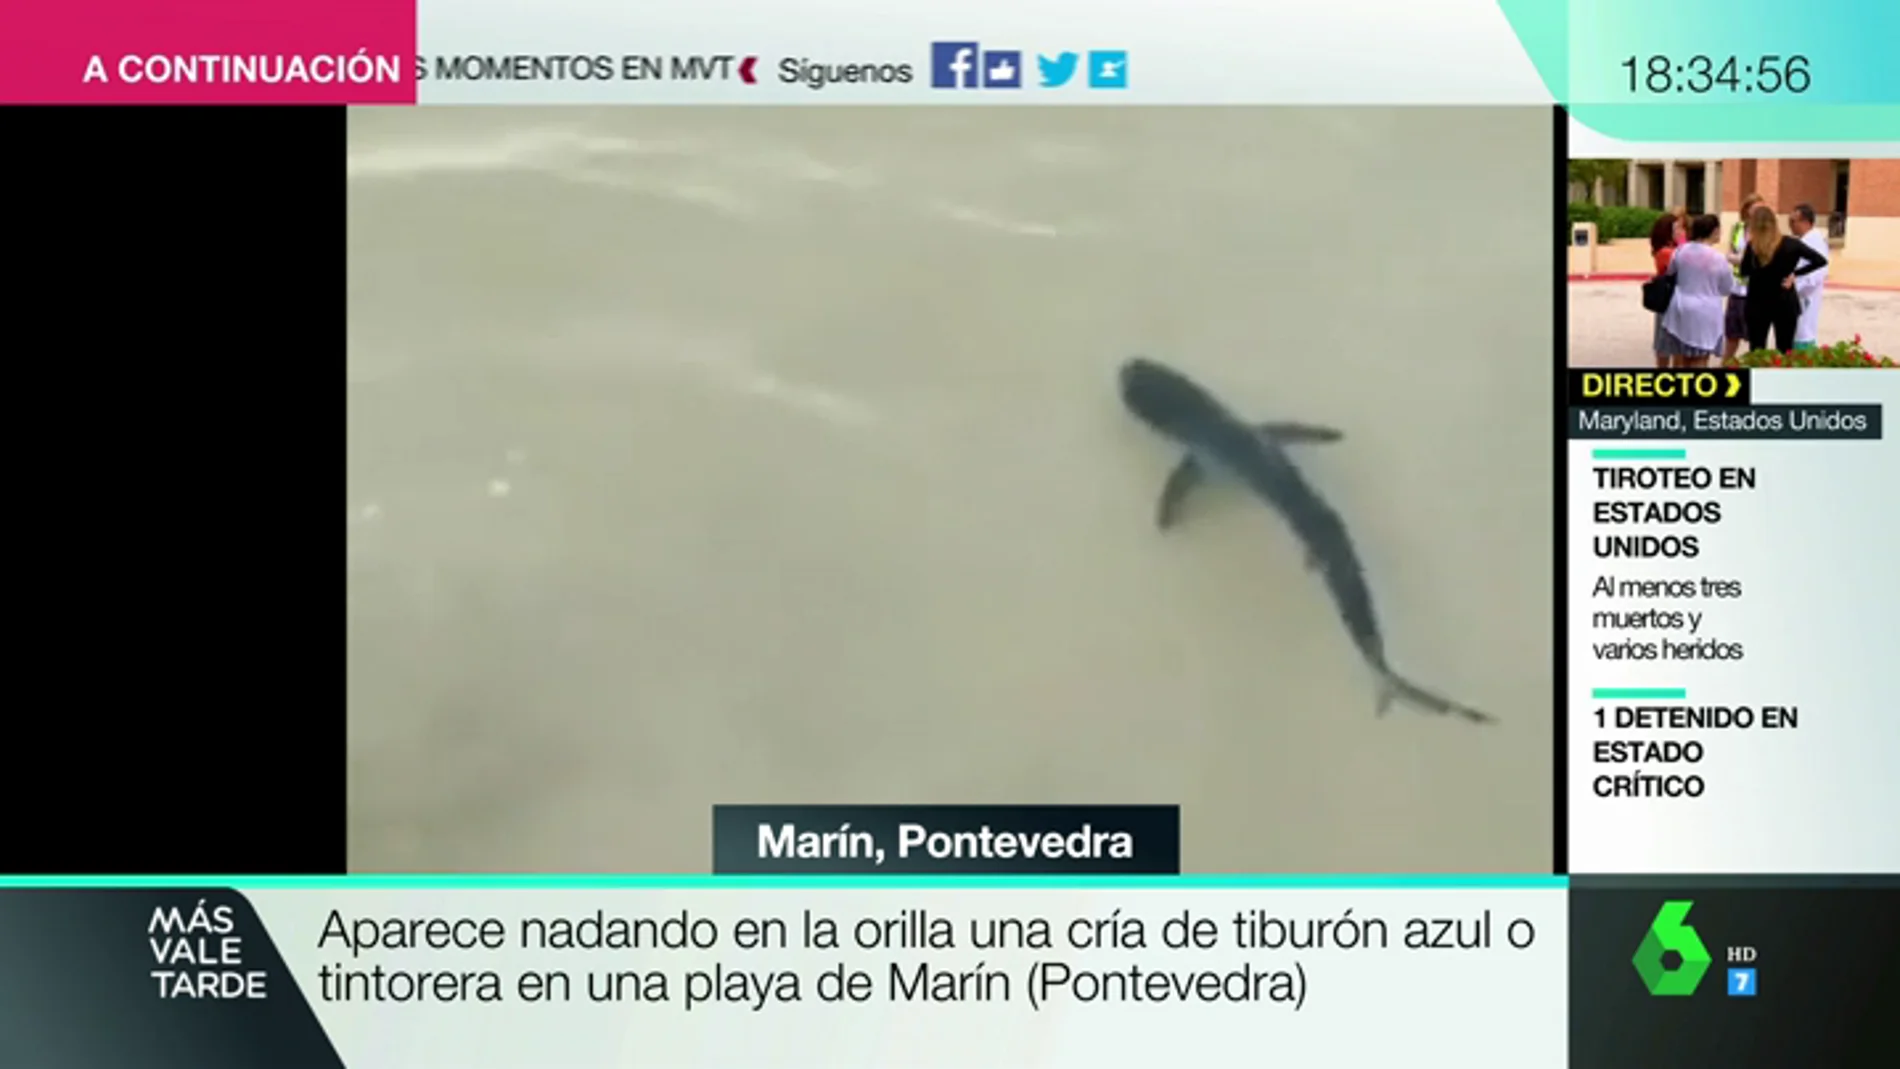 BORRADOR Aparece nadando en una orilla una cría de tiburón azul o tintoreta en una playa de Marín (Pontevedra)